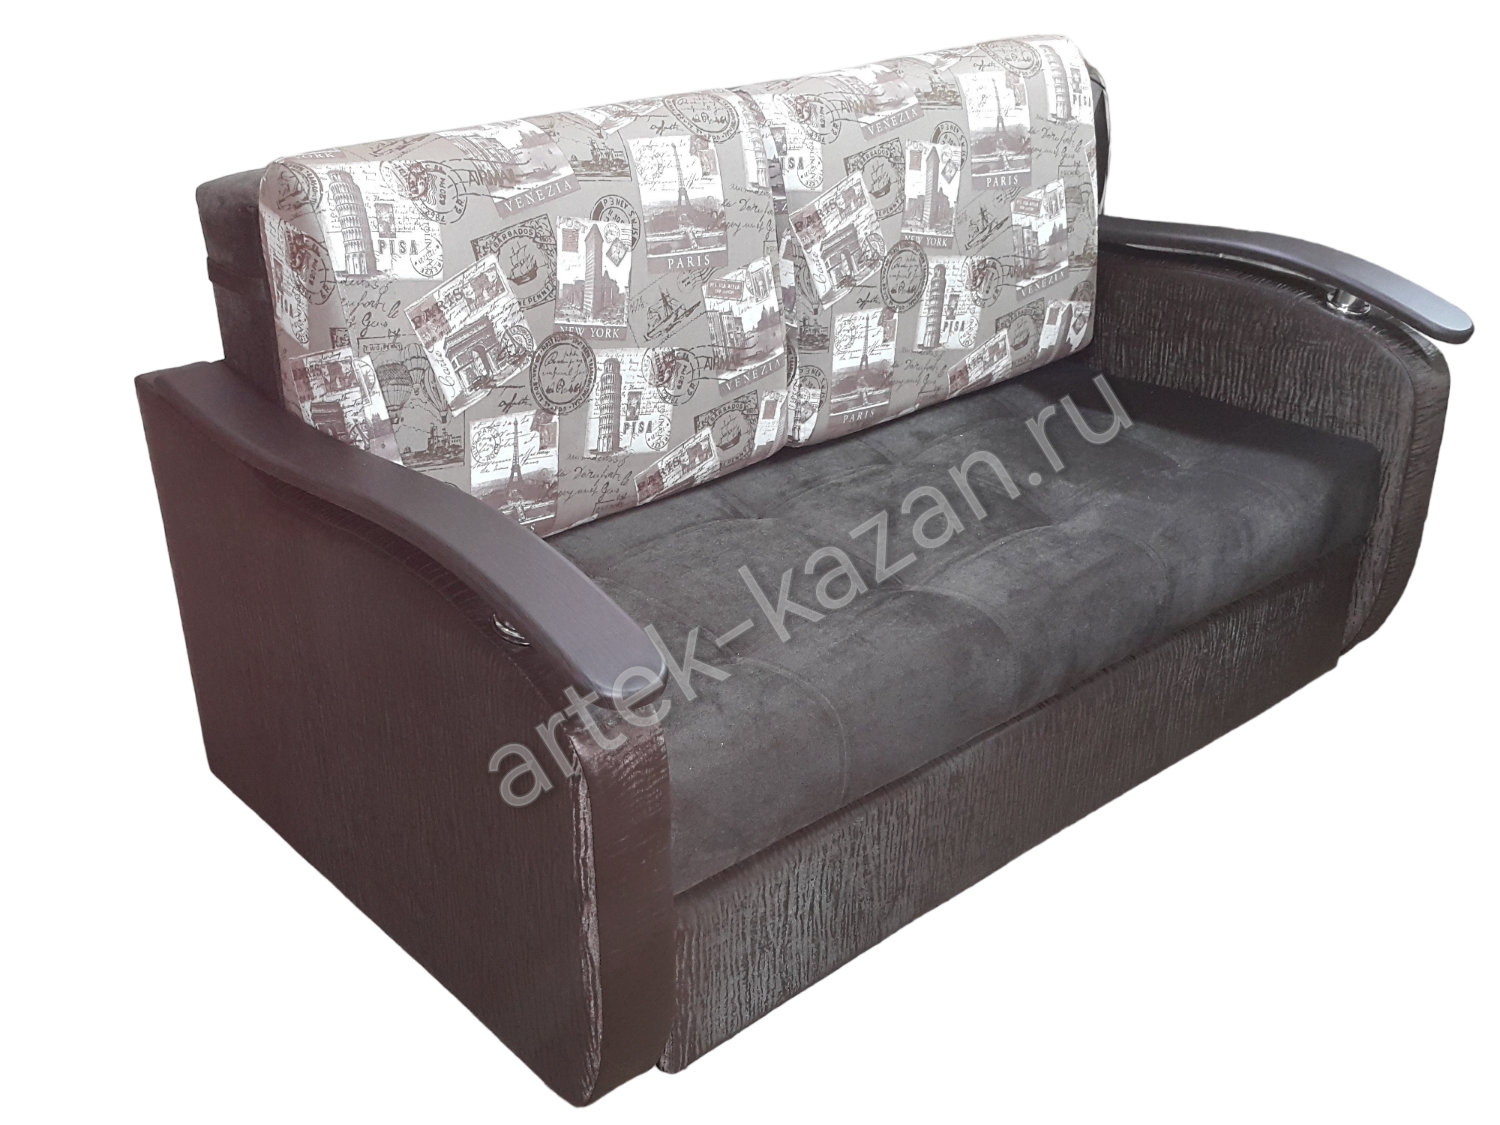 Мини диван на выкатном механизме Миник фото № 21. Купить недорогой диван по низкой цене от производителя можно у нас.